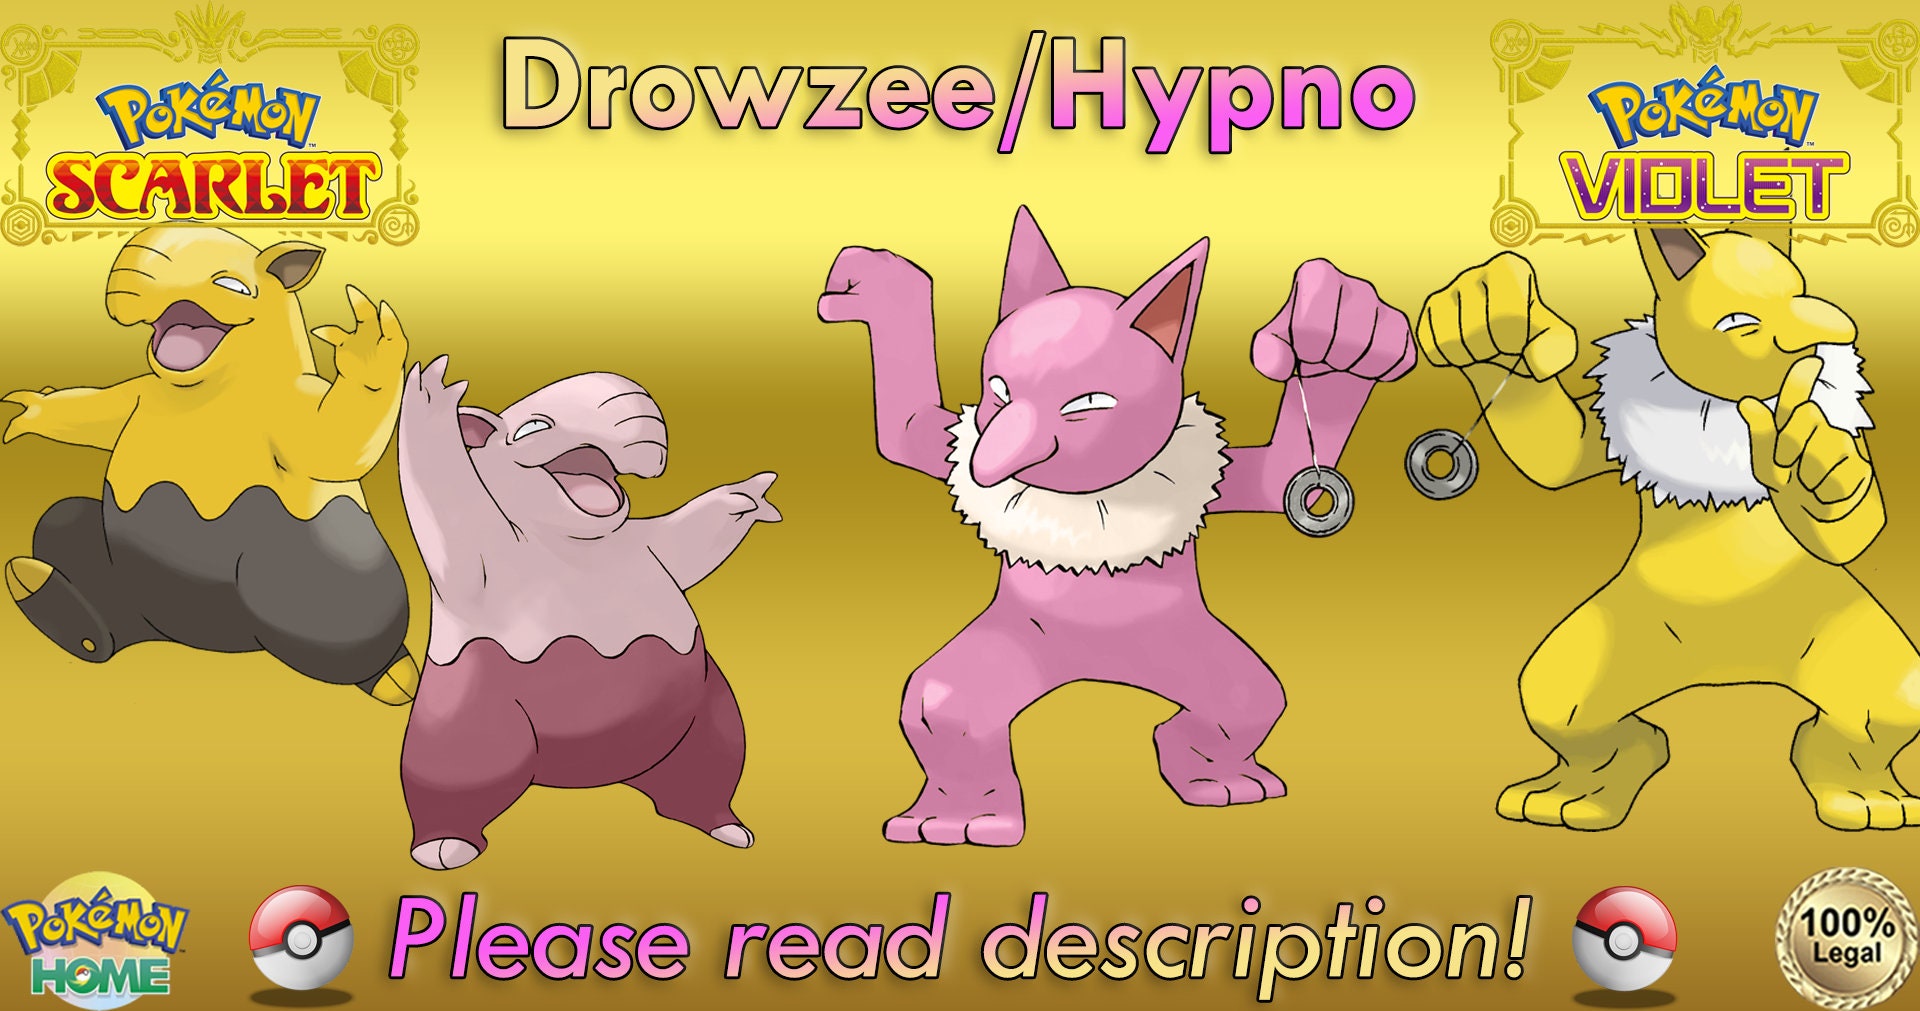 Hypno - Pokemon Go